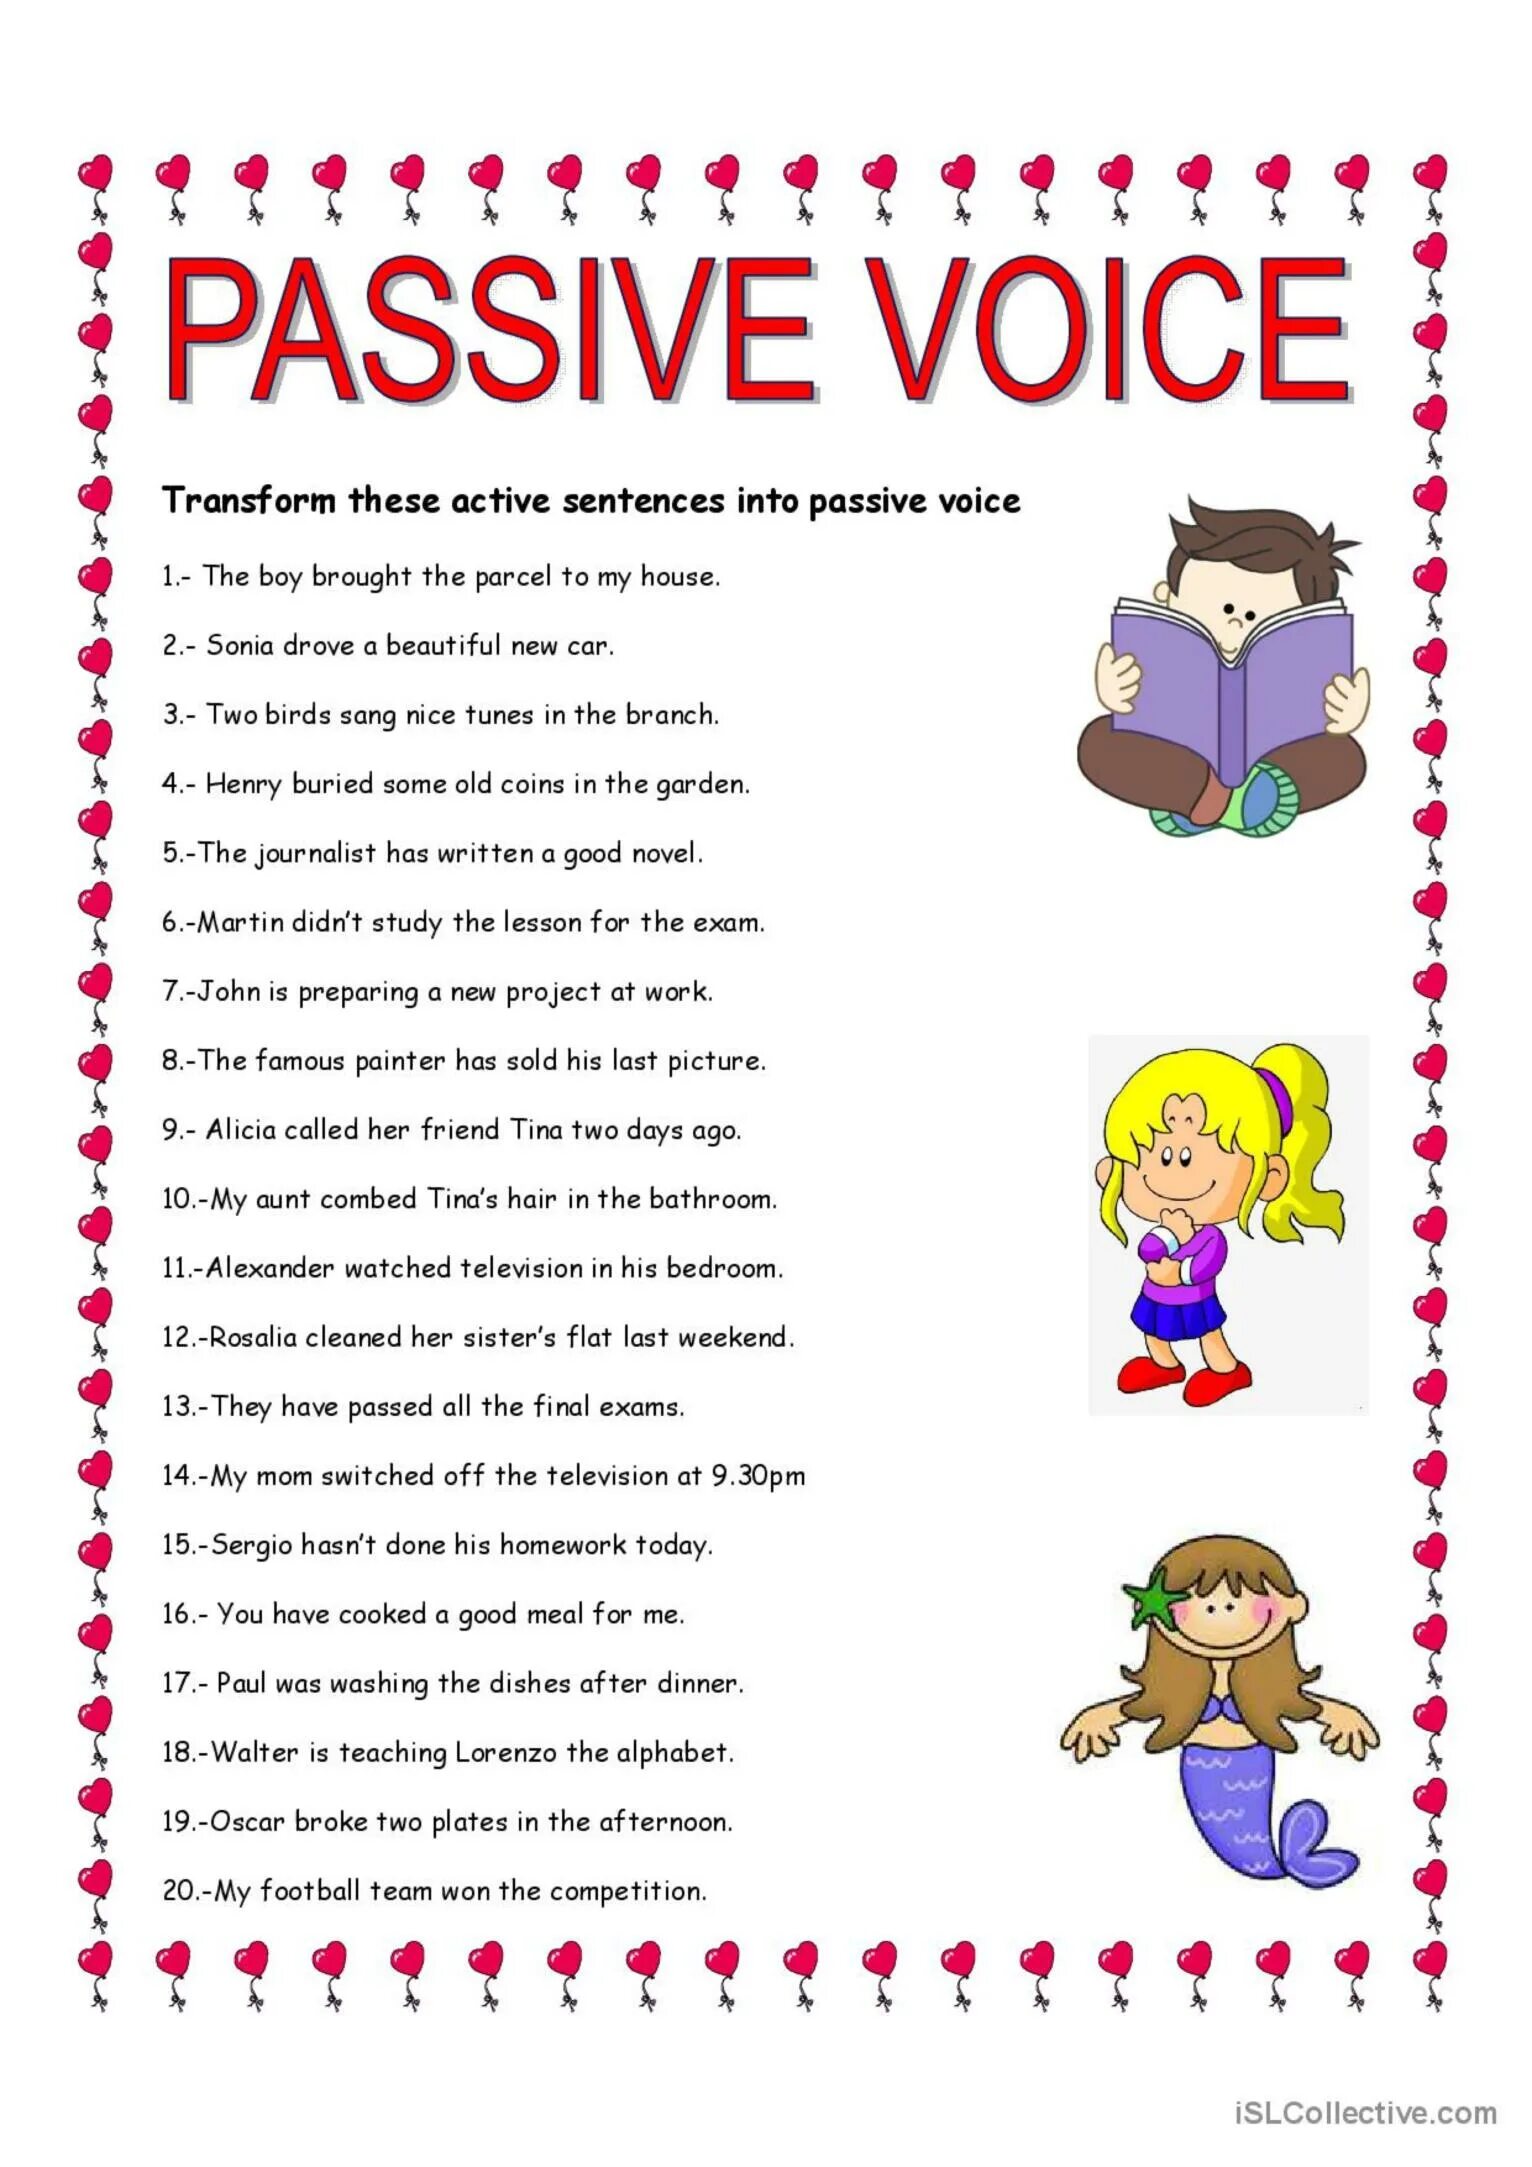 Passive Voice speaking activities for Elementary. Passive Voice games and activities. Passive Voice Sheet activities. Passive Voice questions Worksheets. Active passive questions